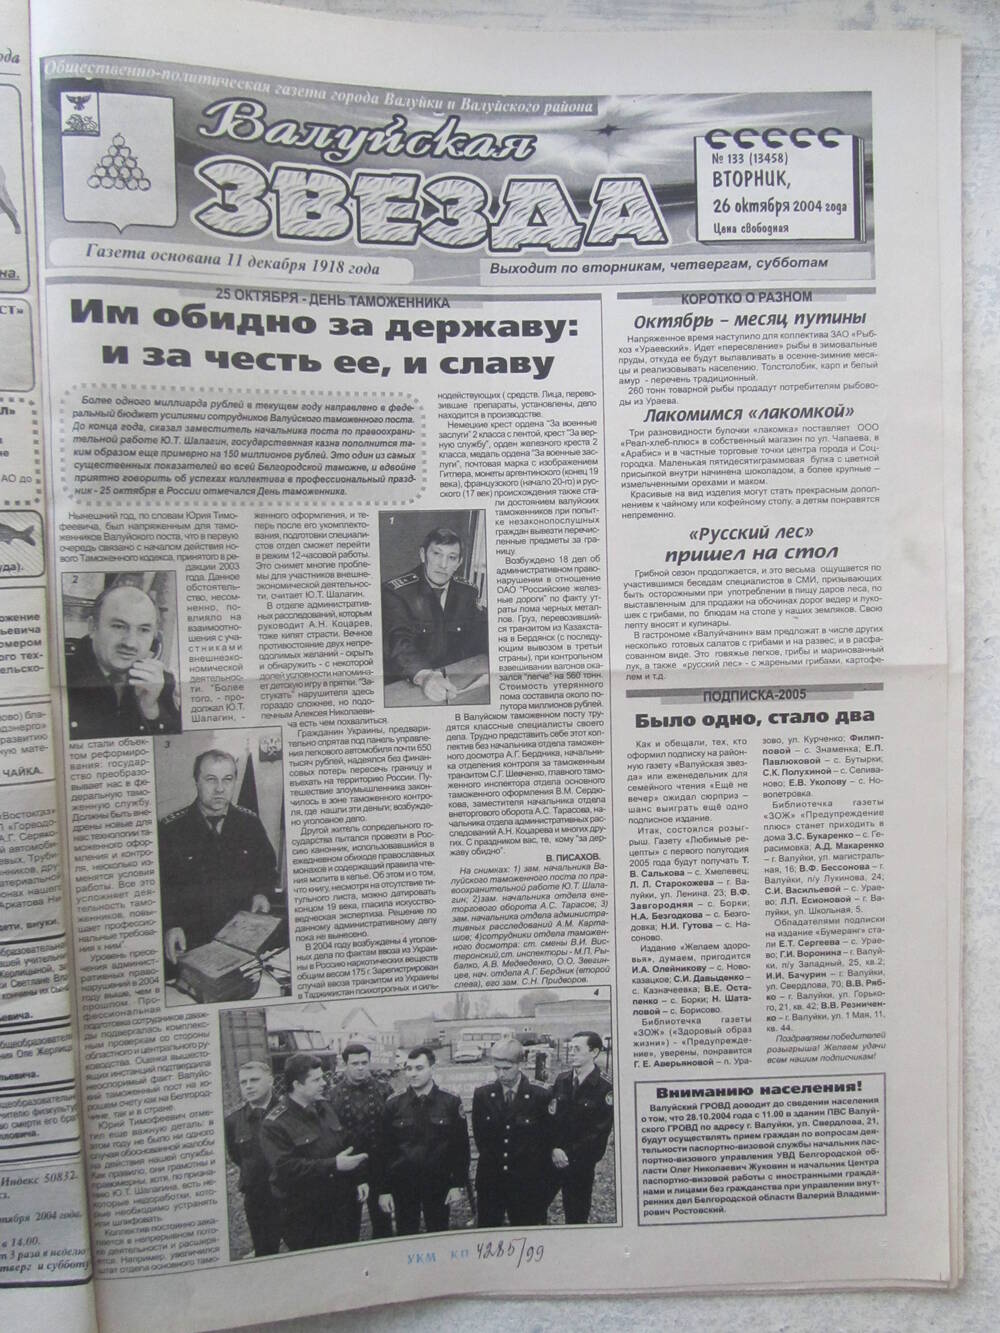 Газета Валуйская звезда №133 от 26.10.2004 г